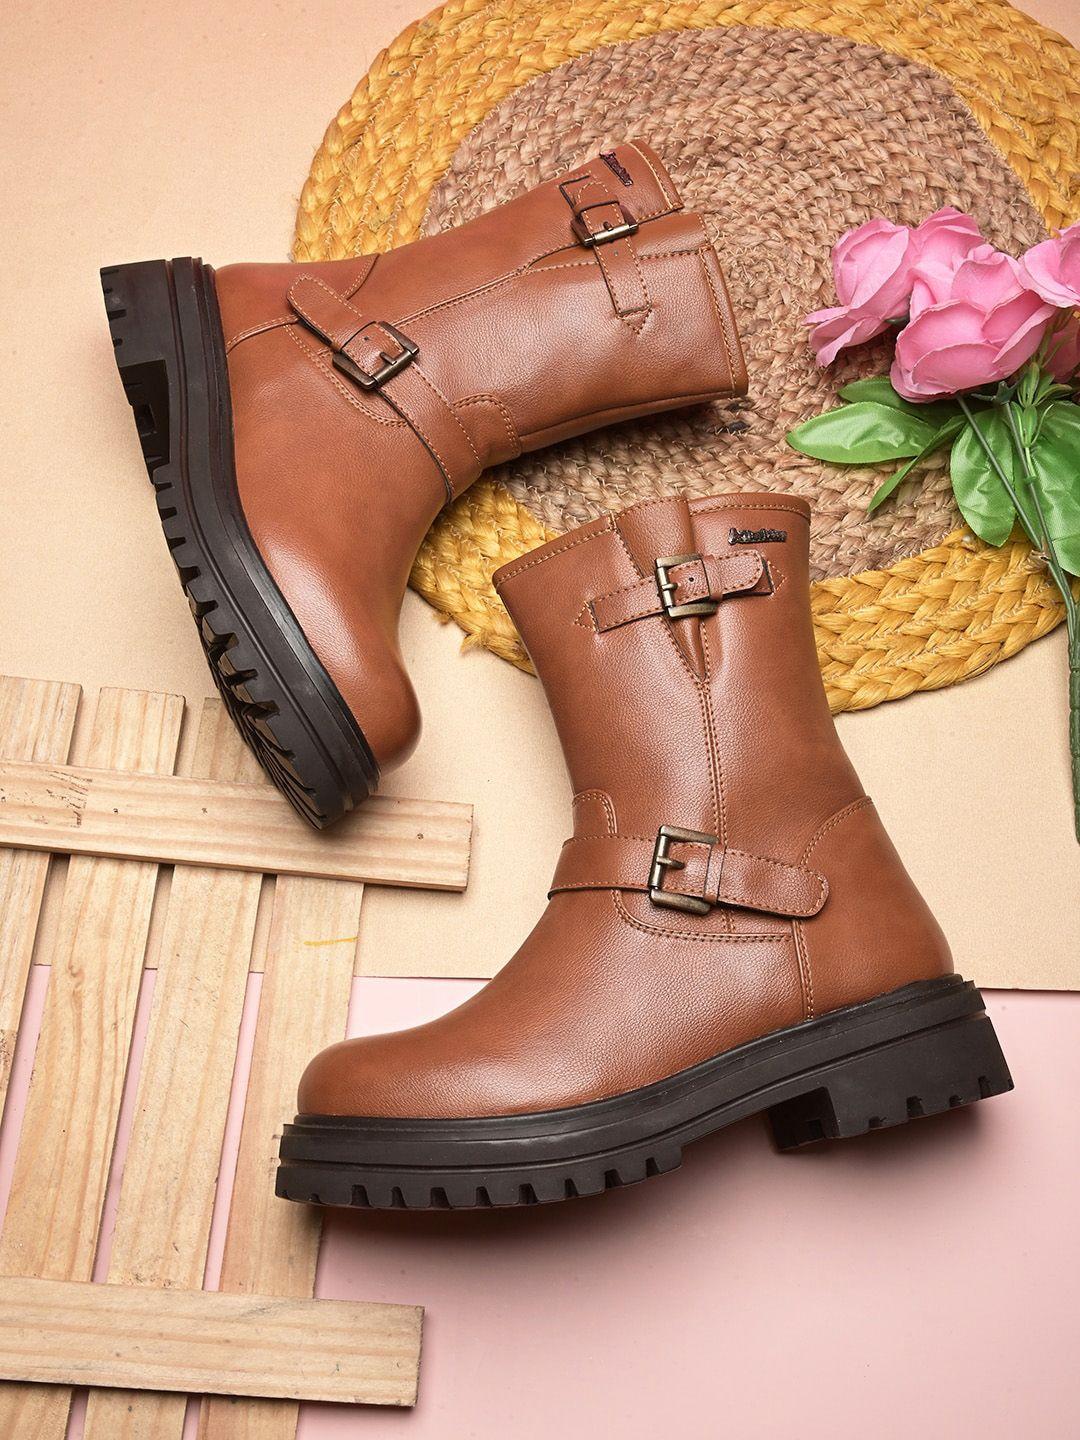 alleviater women mid top block heel regular boots with buckle detail